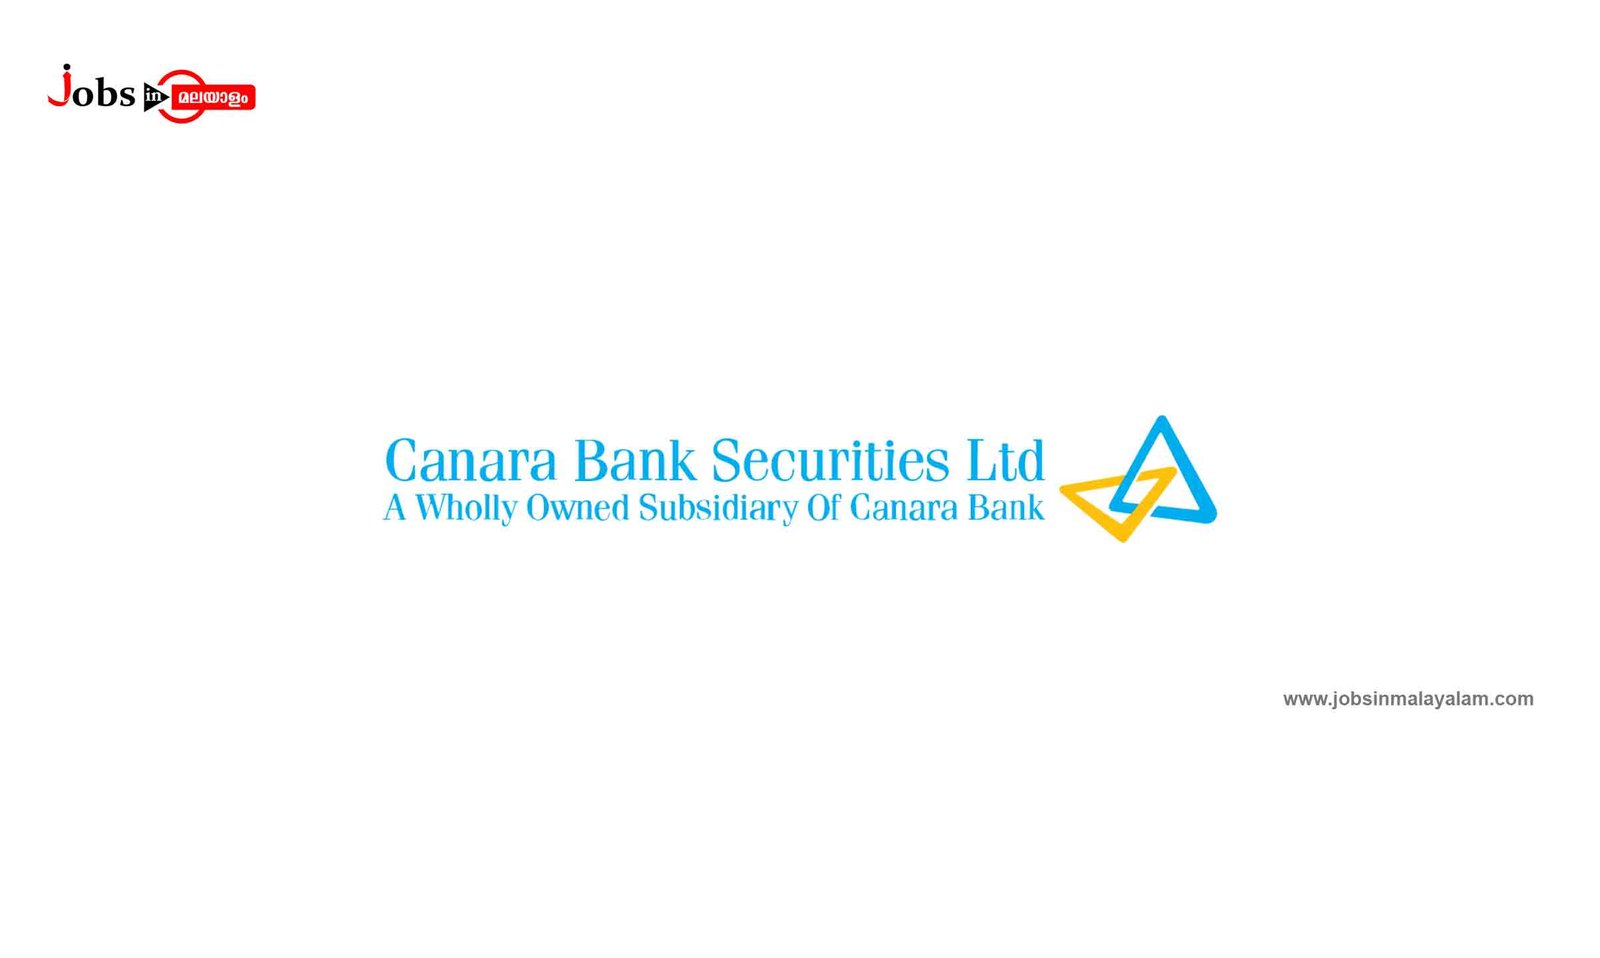 Canara Bank Securities Ltd